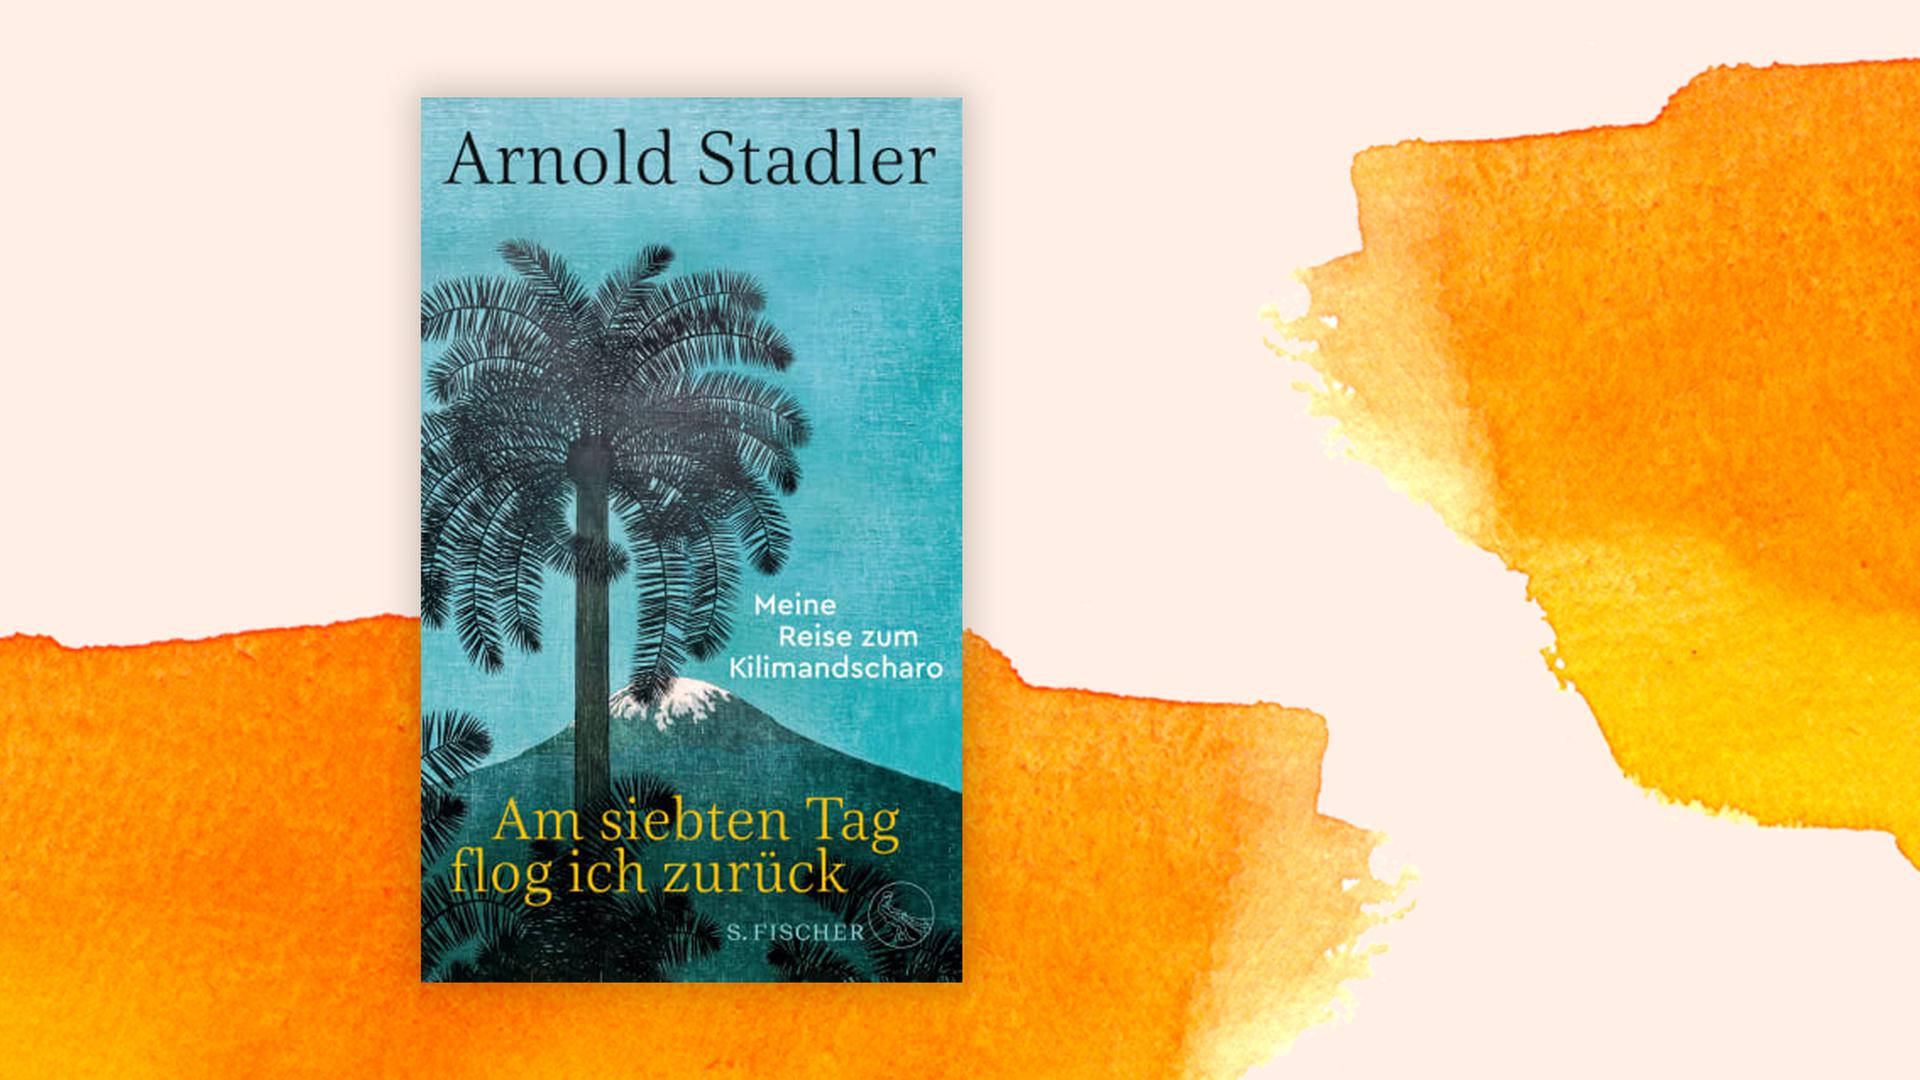 Arnold Stadler: "Am siebten Tag flog ich zurück"